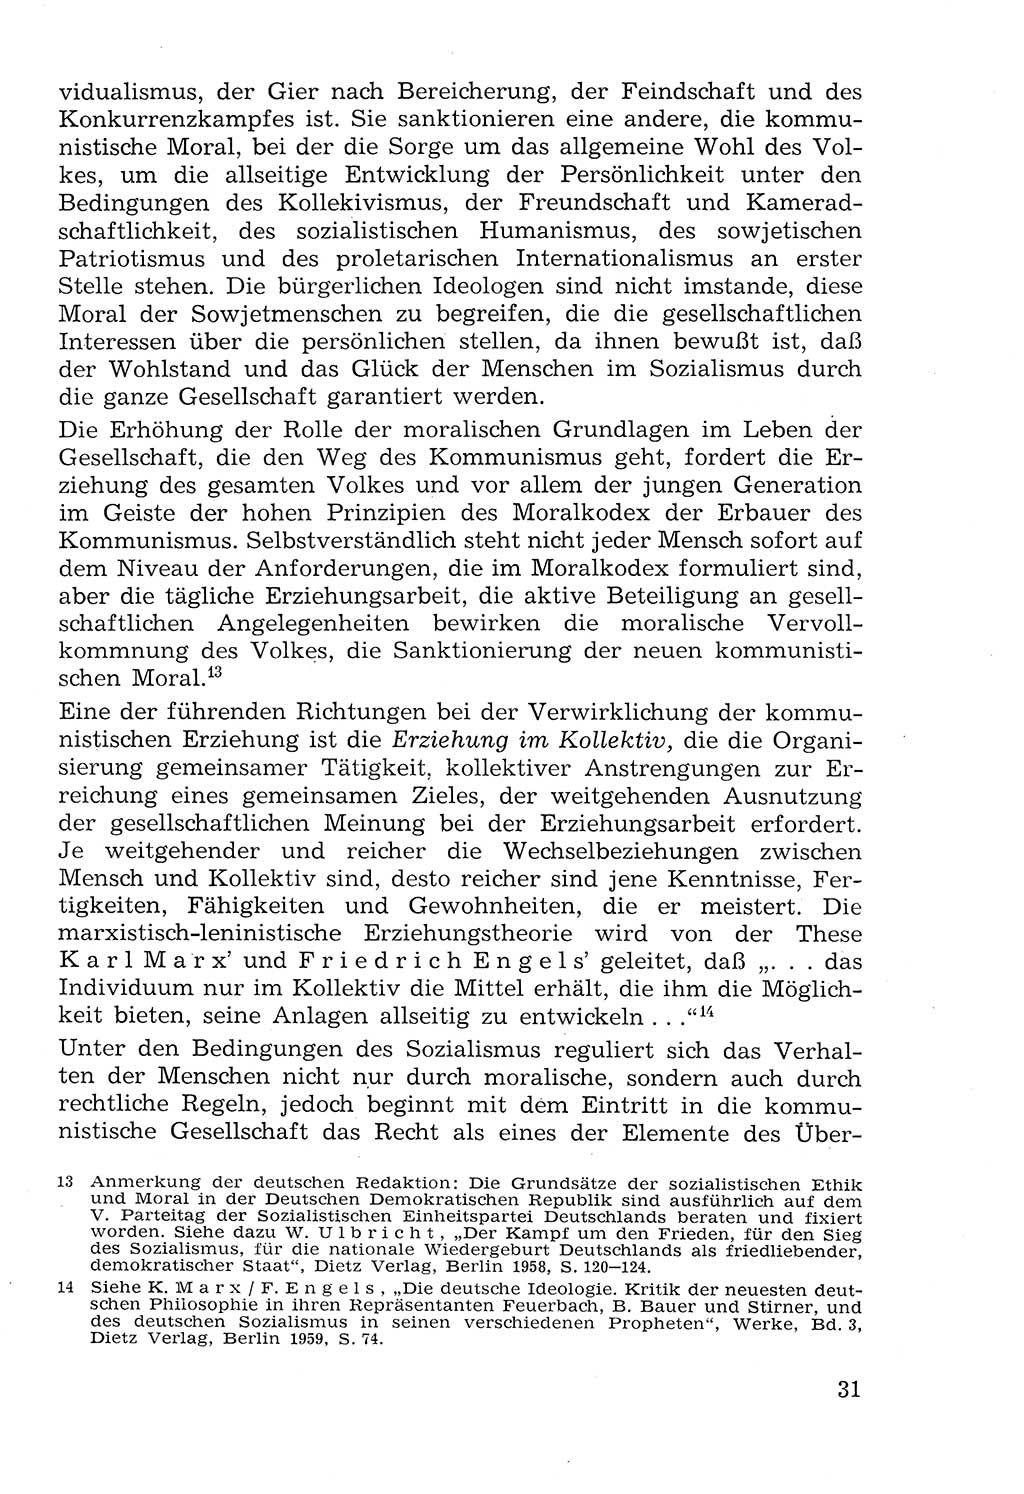 Lehrbuch der Strafvollzugspädagogik [Deutsche Demokratische Republik (DDR)] 1969, Seite 31 (Lb. SV-Pd. DDR 1969, S. 31)